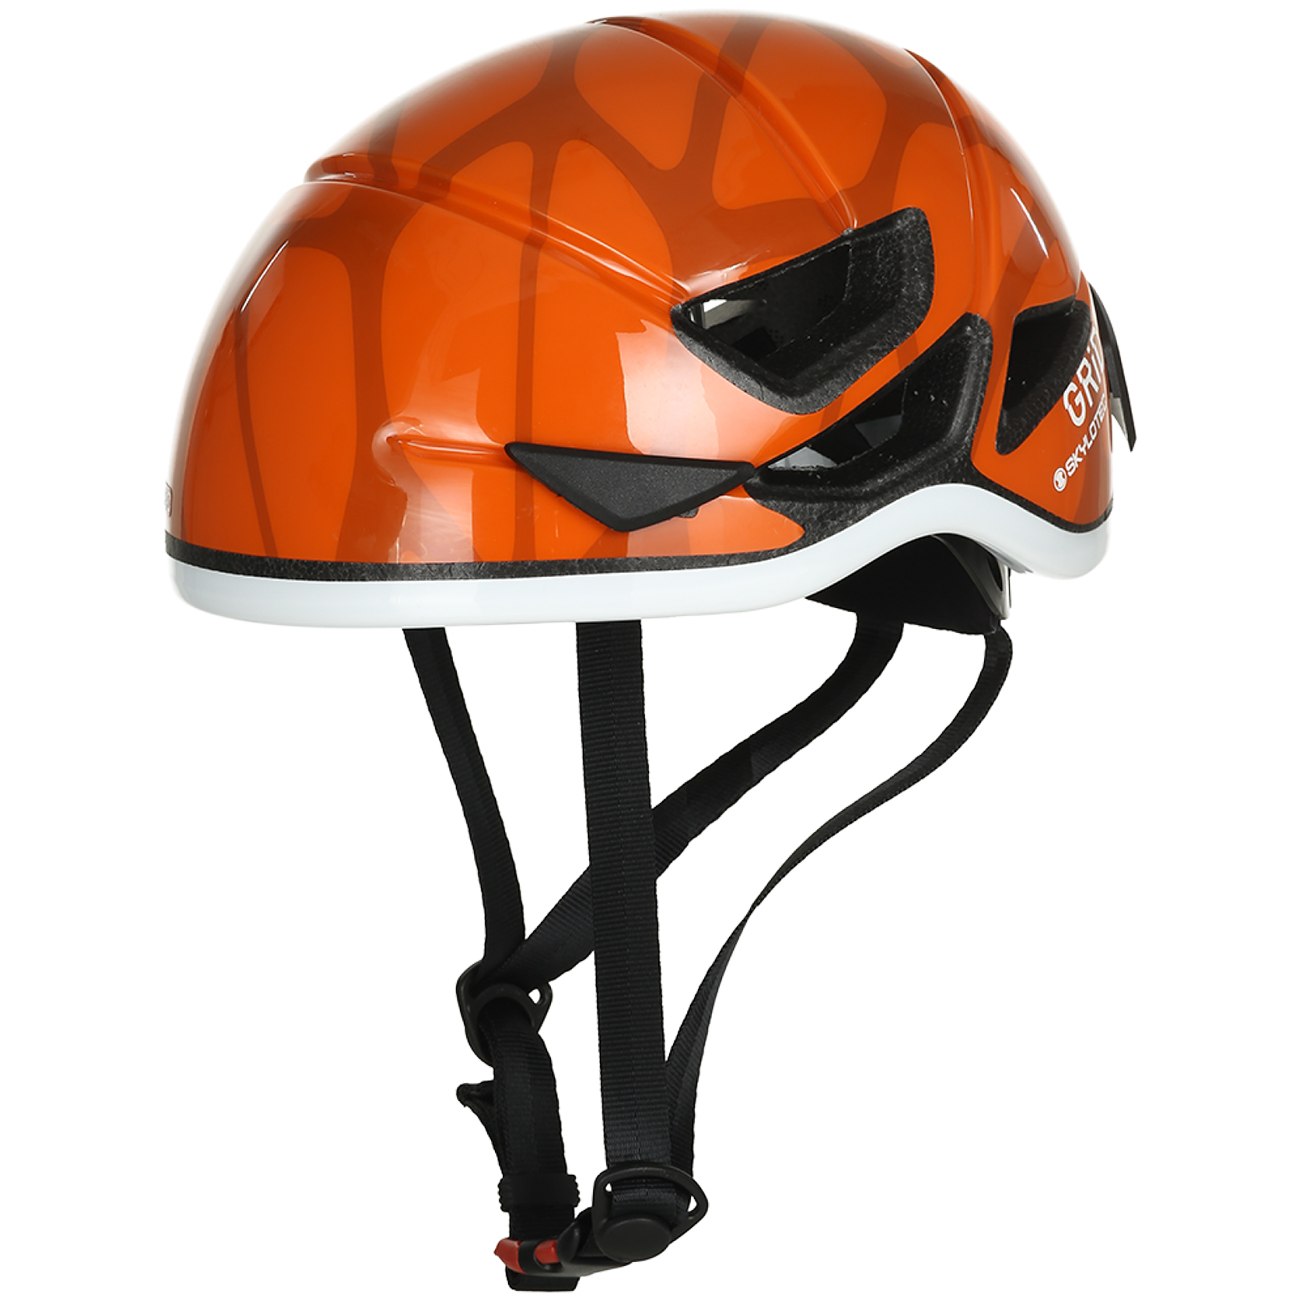 Productfoto van Skylotec grid Vent 55 Helmet - orange